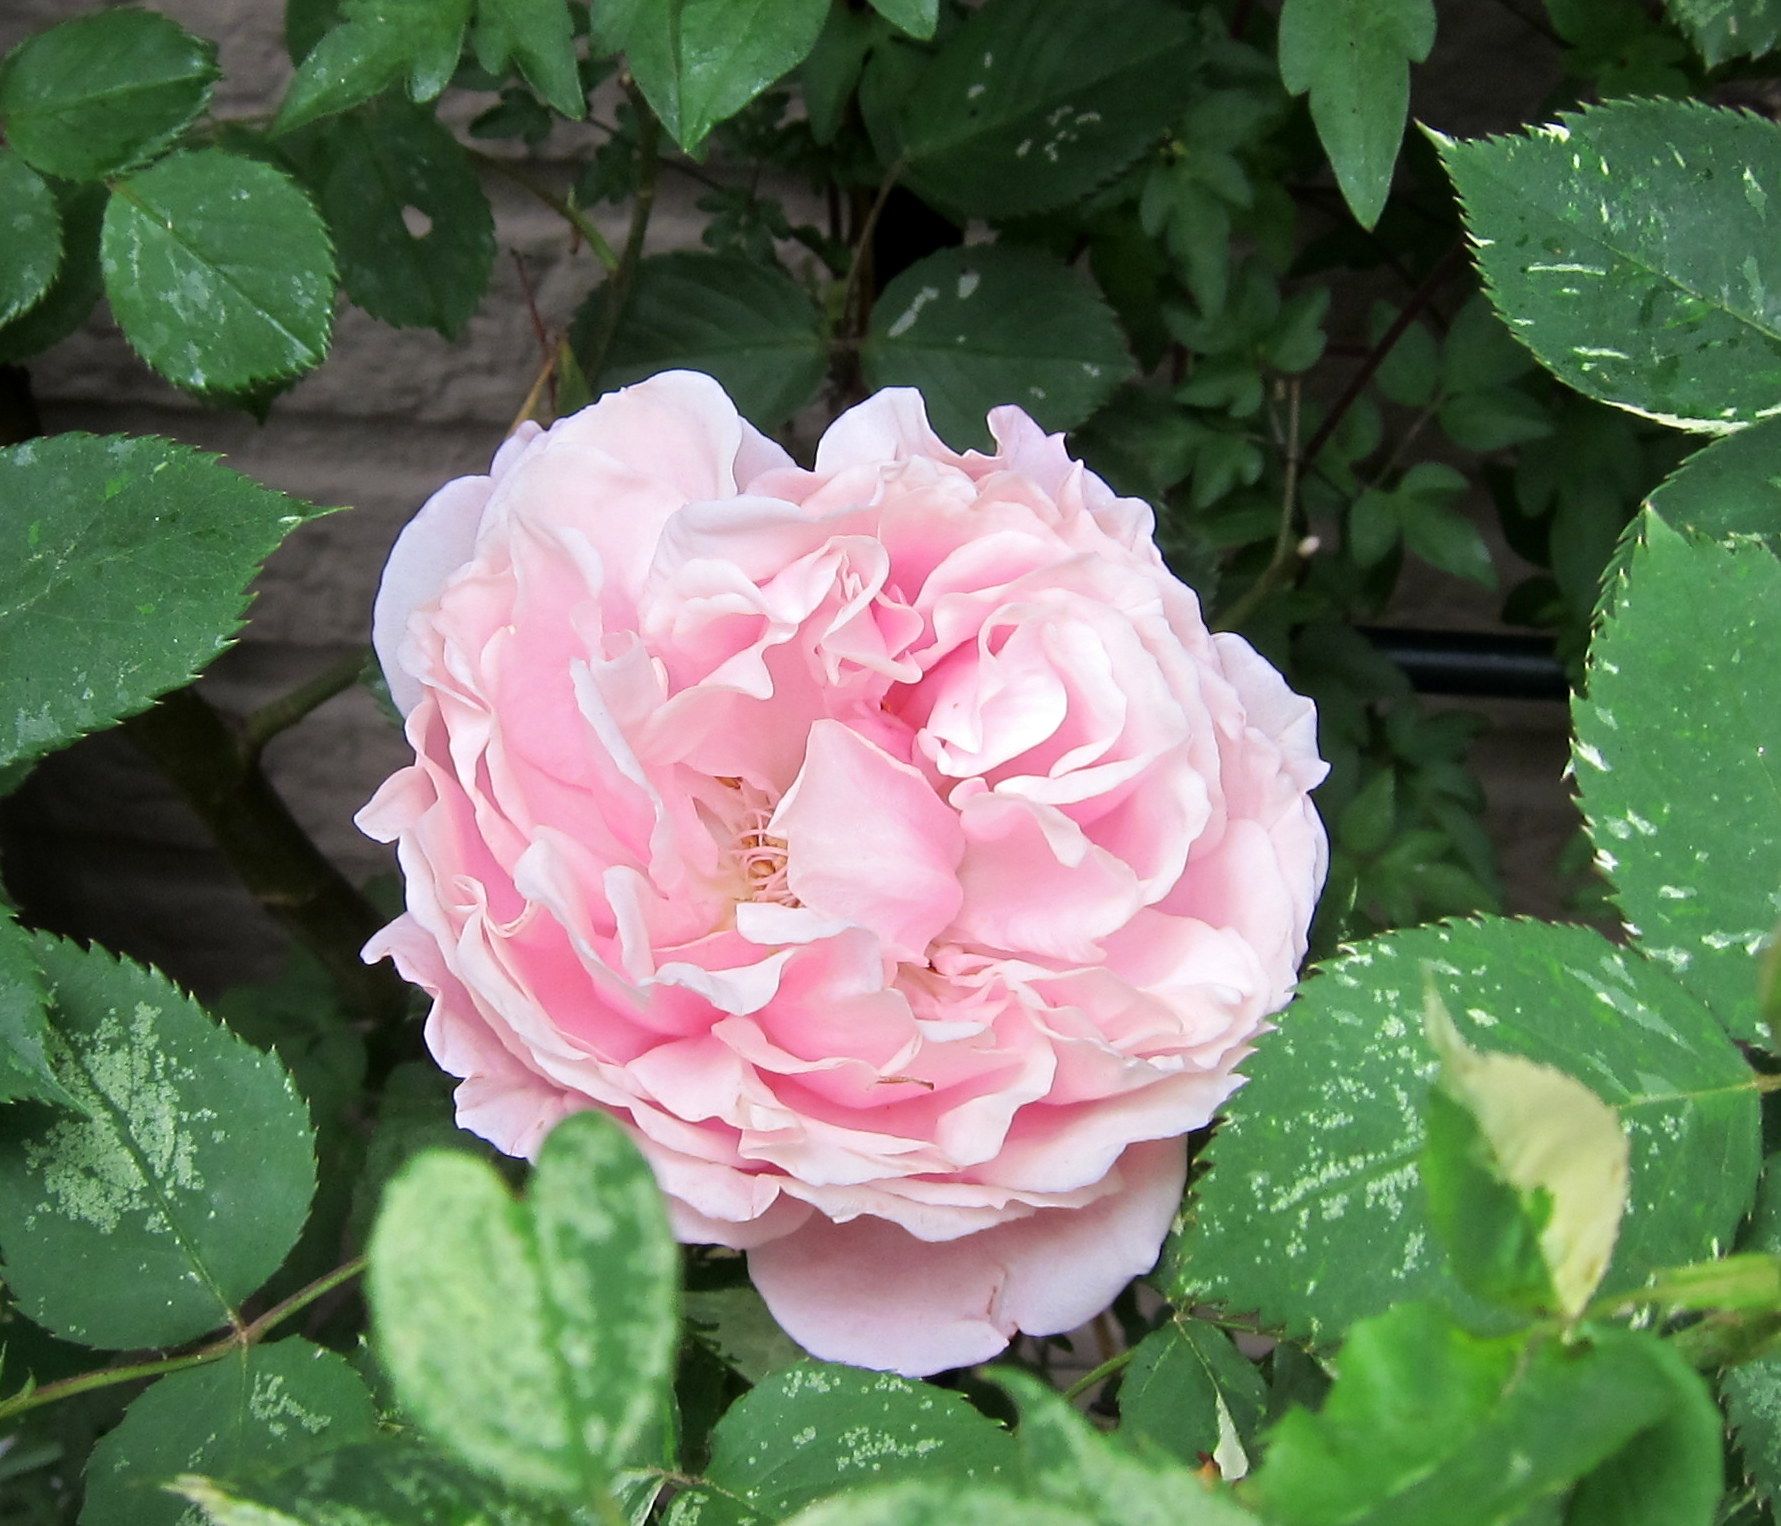 バラが咲いた ヘルシューレンとジャクリーヌ デュ プレ ひだまりの庭 ヒネモスノタリ